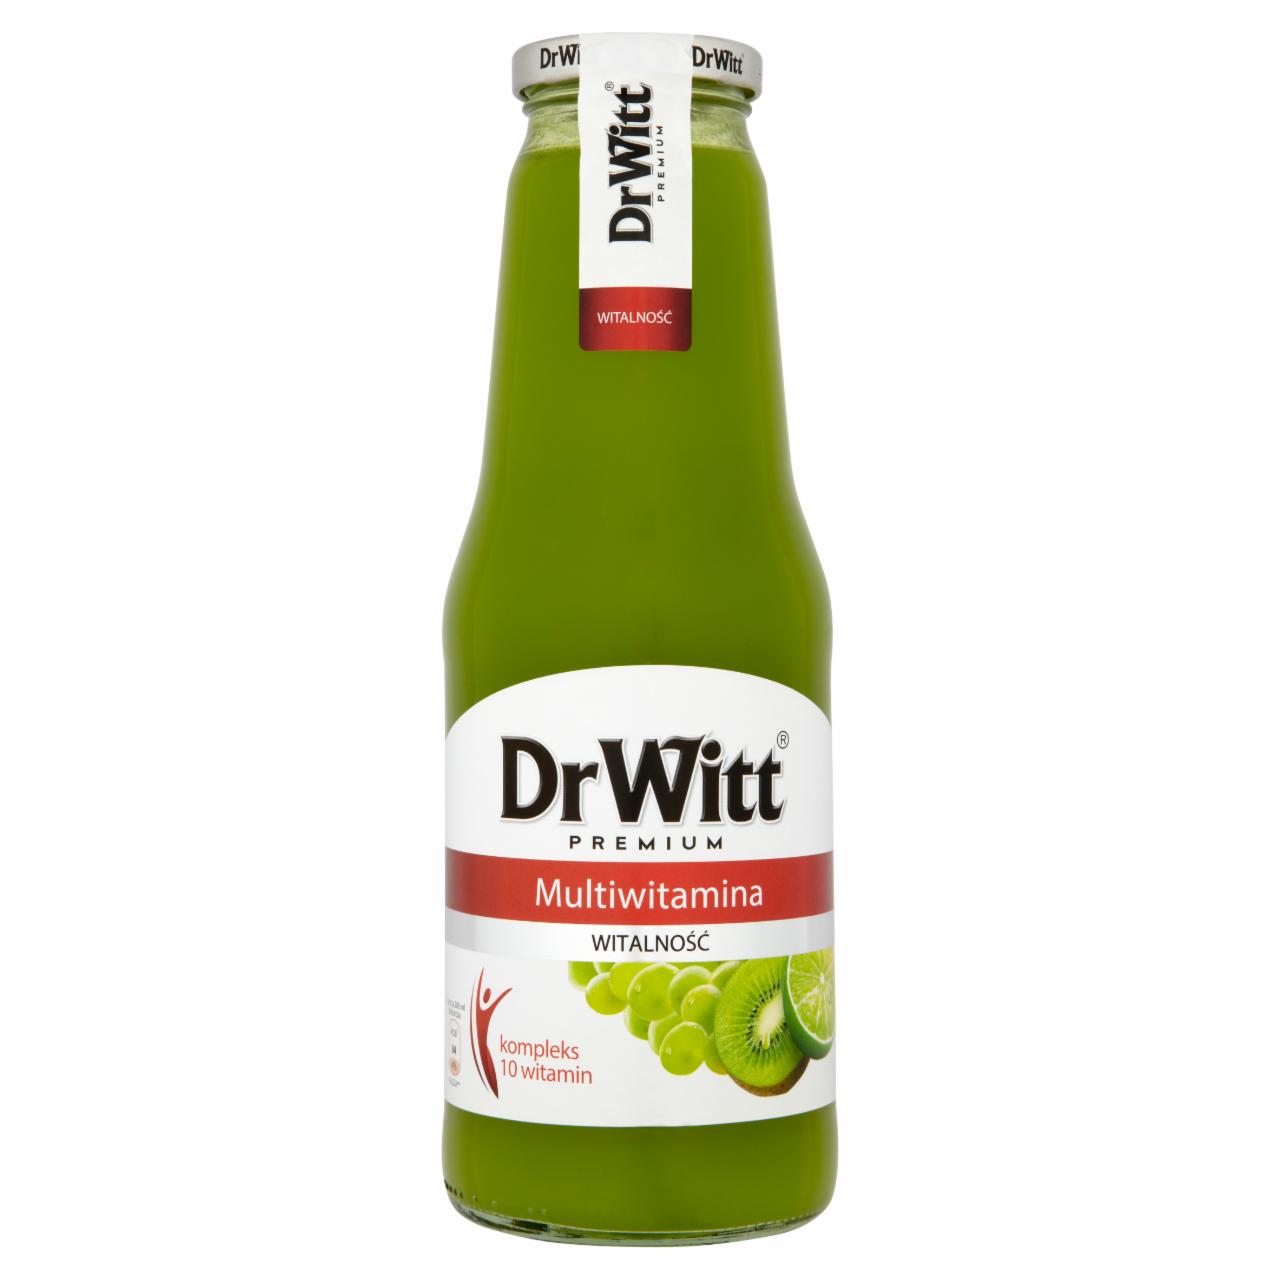 Zdjęcia - Dr Witt Premium Witalność Multiwitamina zielona Napój 1 l